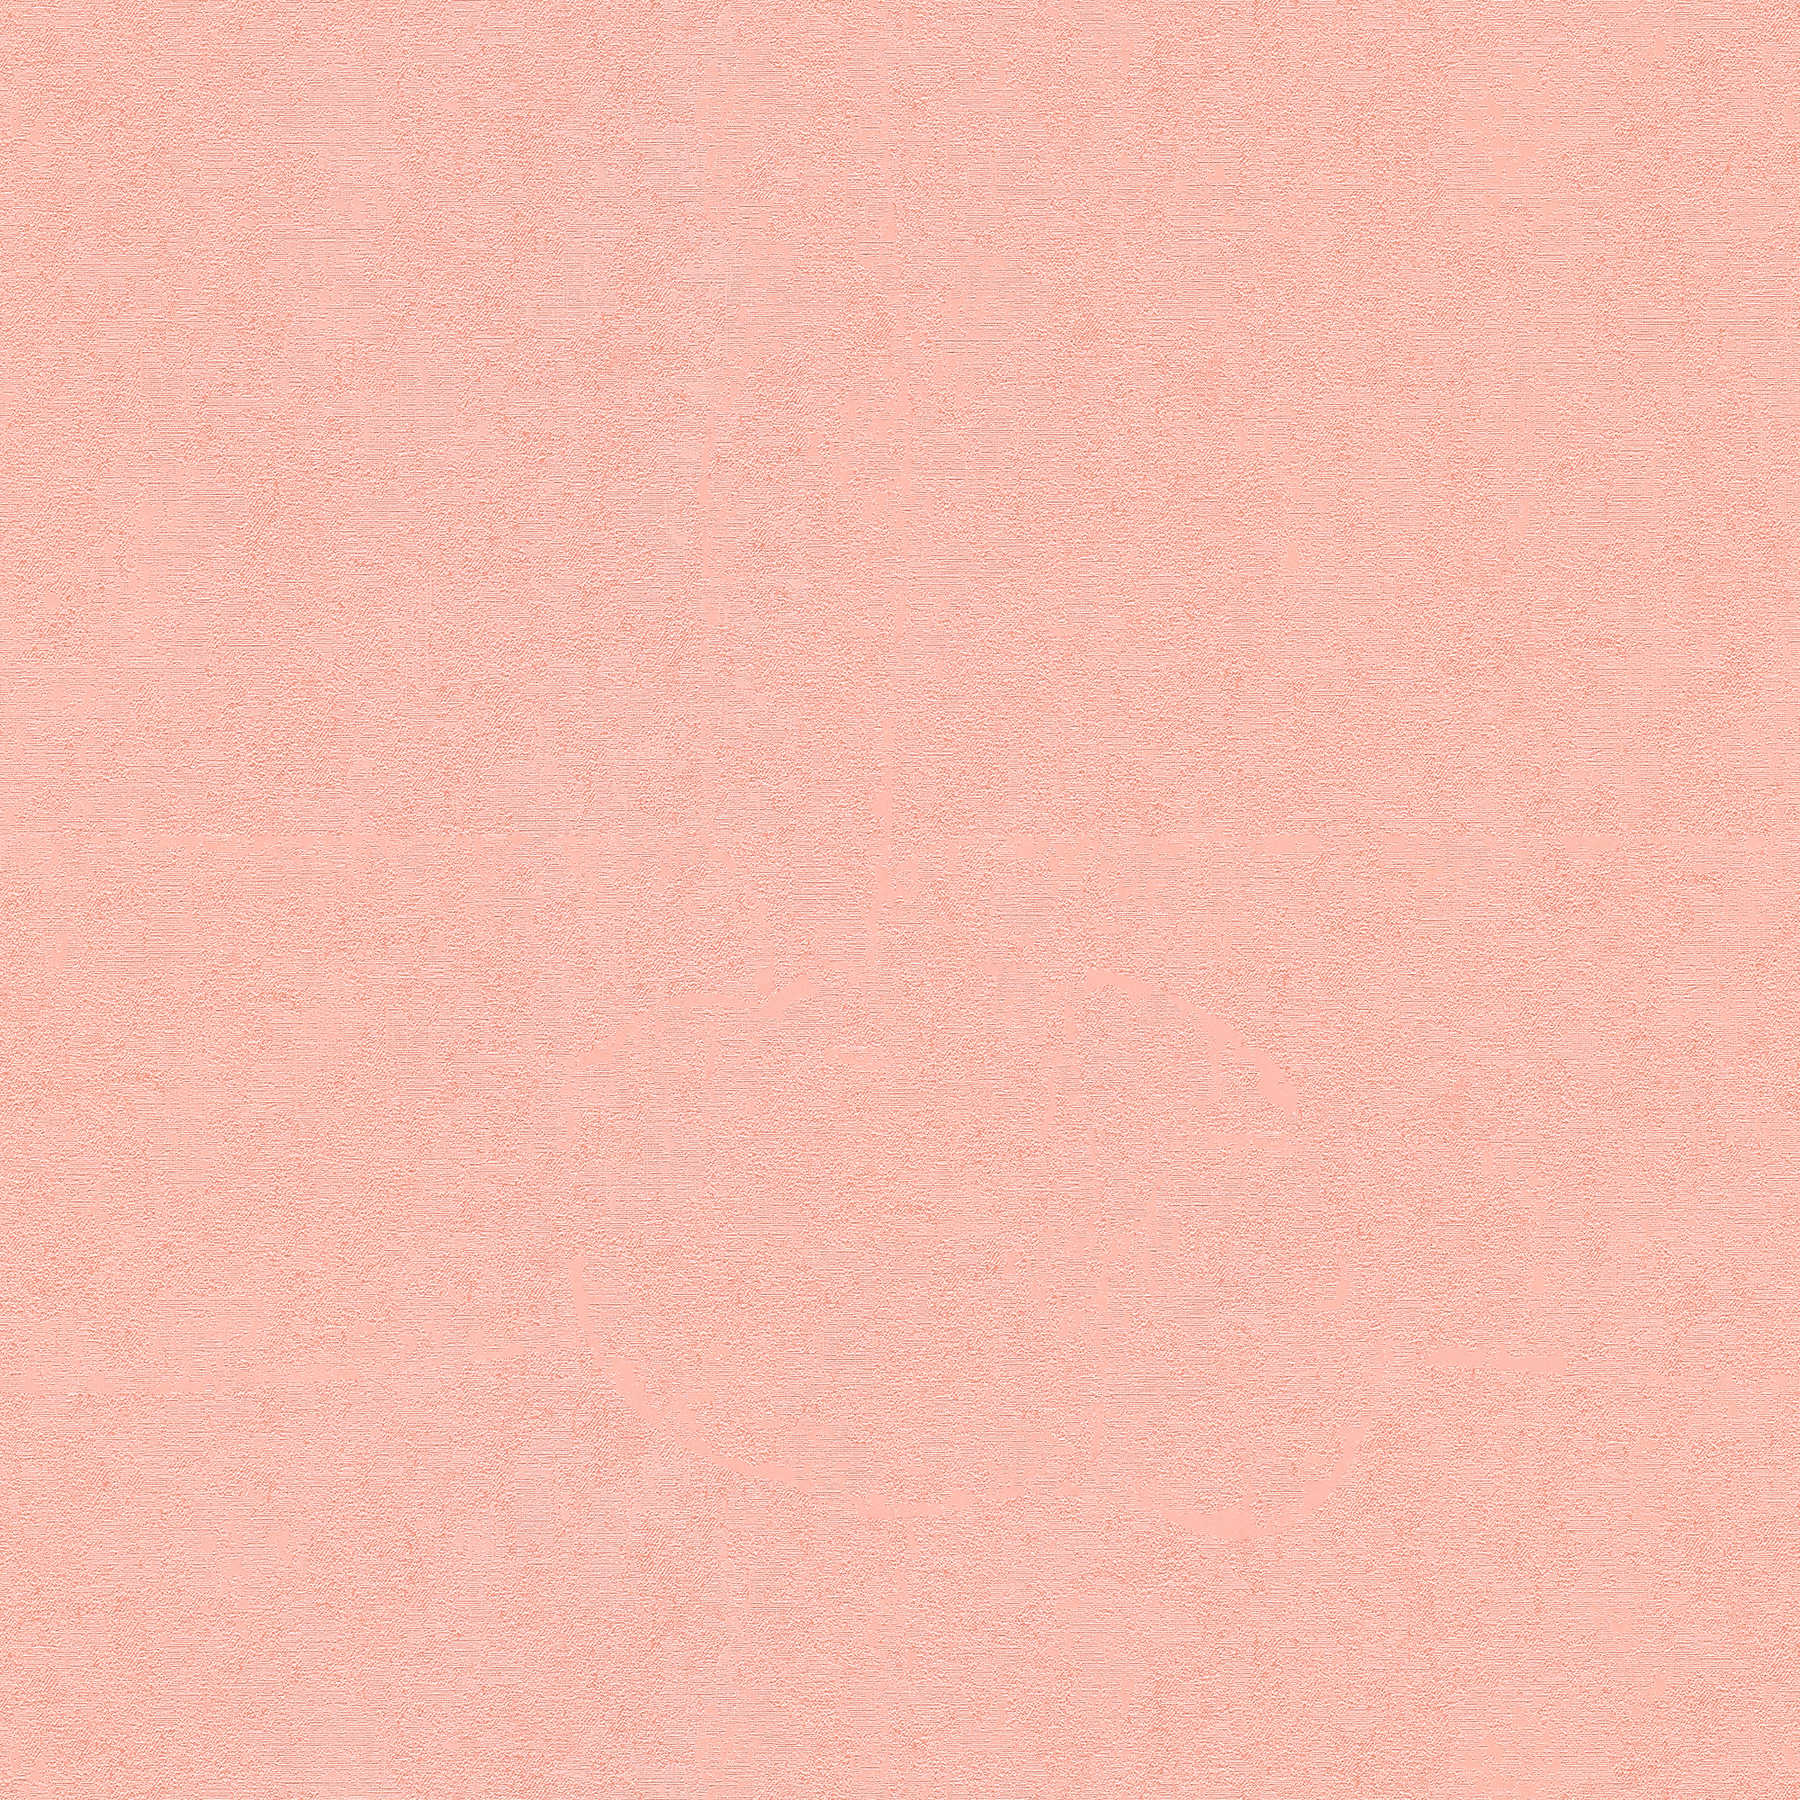 VERSACE Home Papier peint uni rose et effet chatoyant - rose
